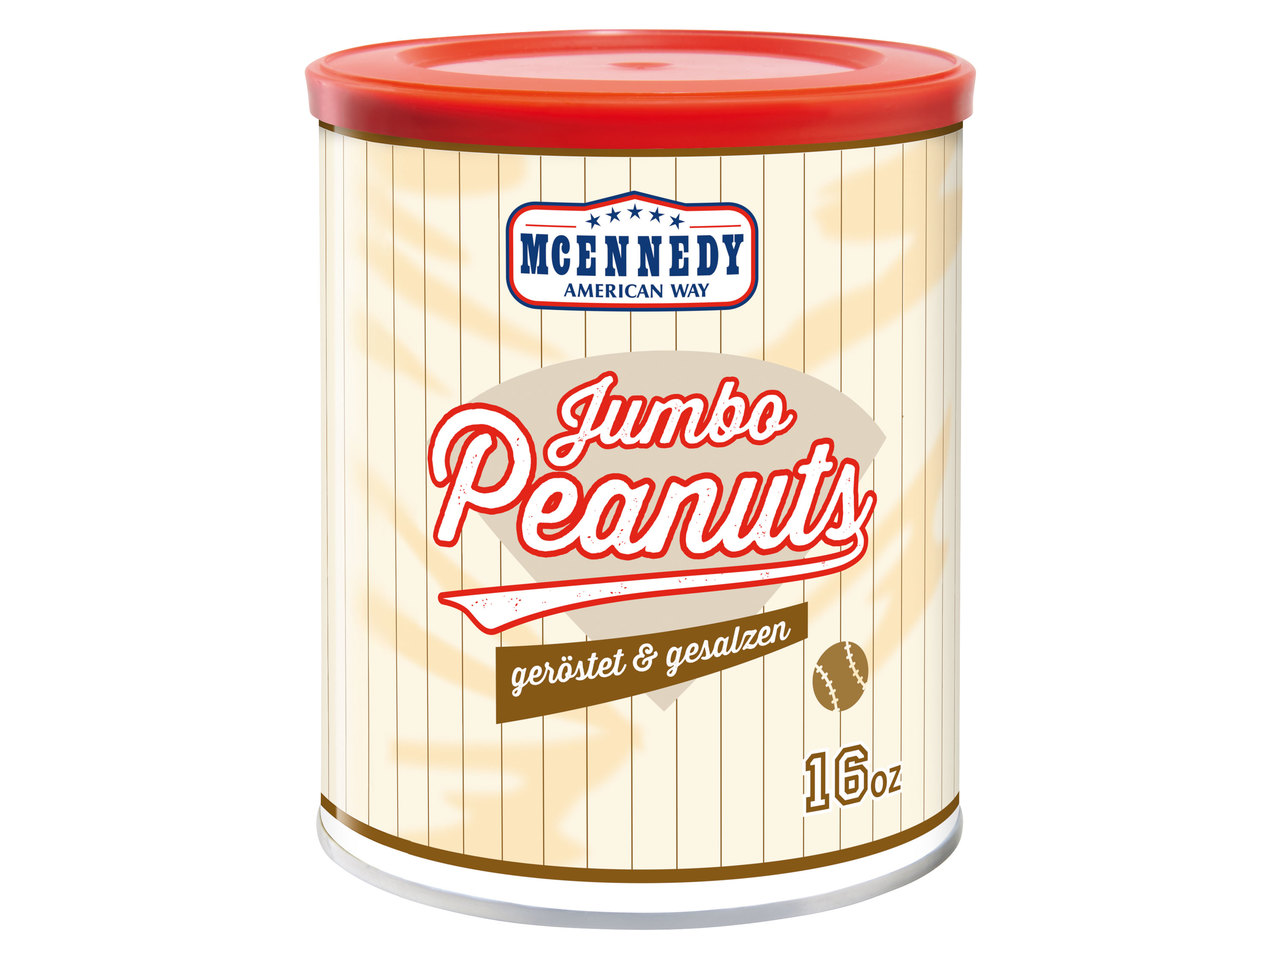 MCENNEDY Jumbo Peanuts